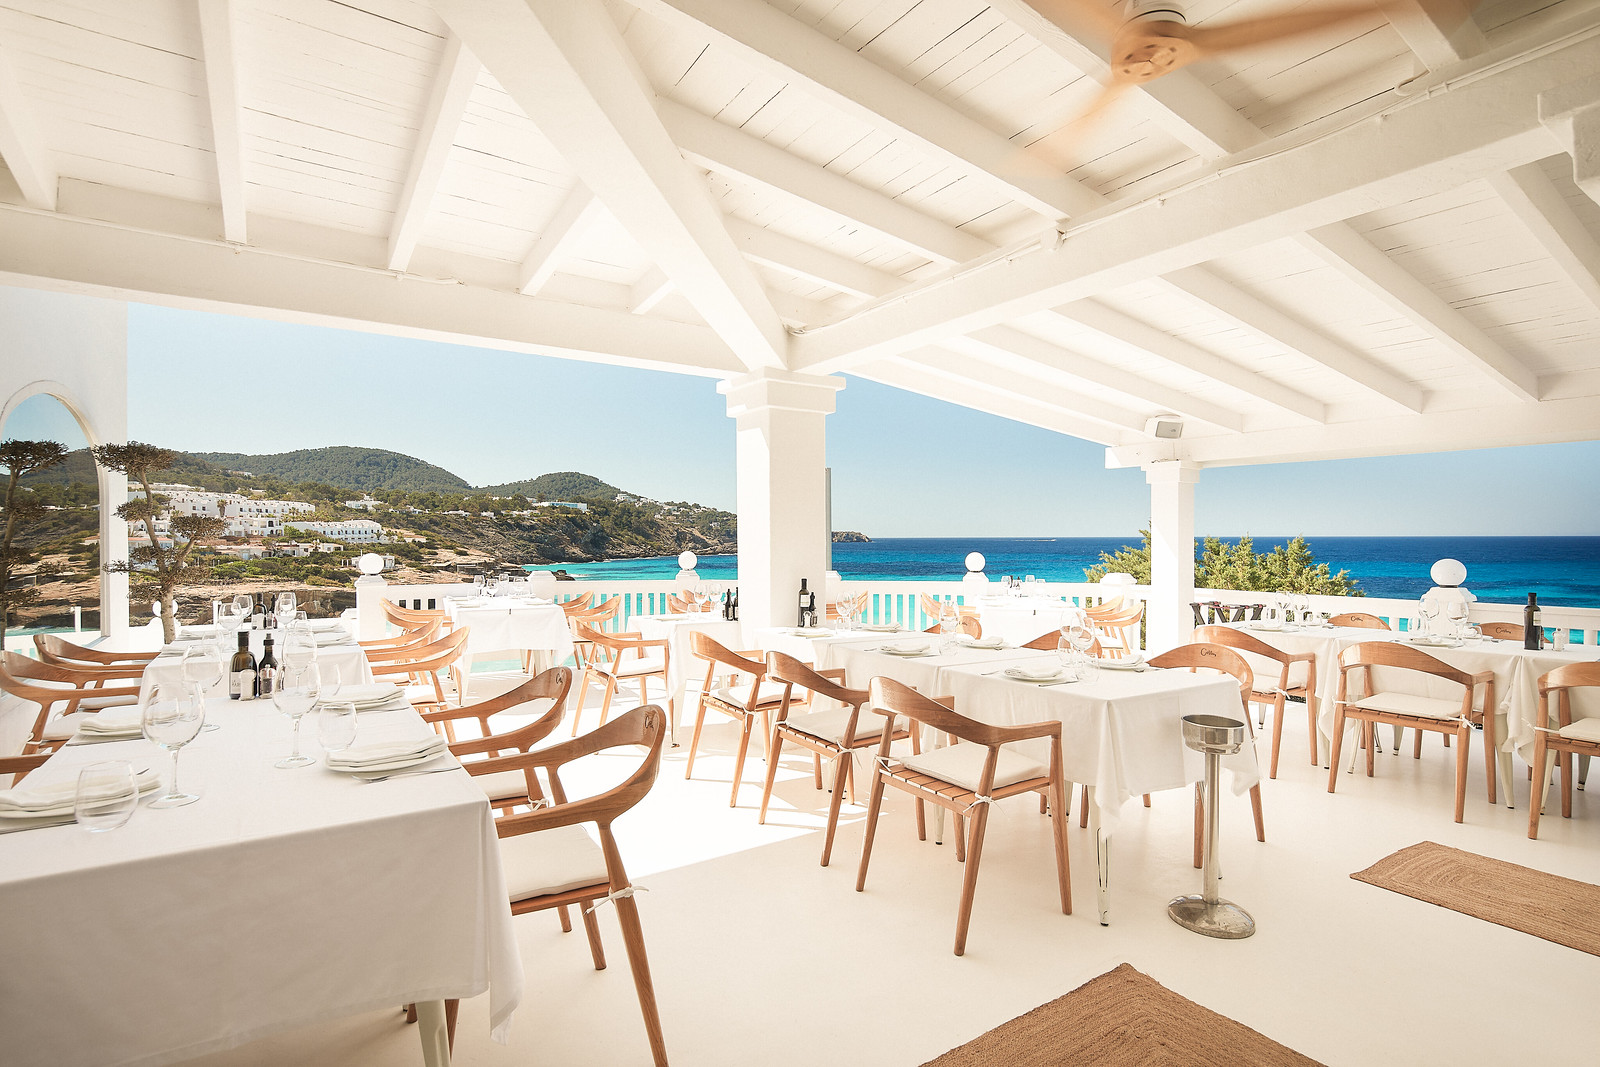 White Ibiza Beach Restaurants Guide: Cotton Beach Club